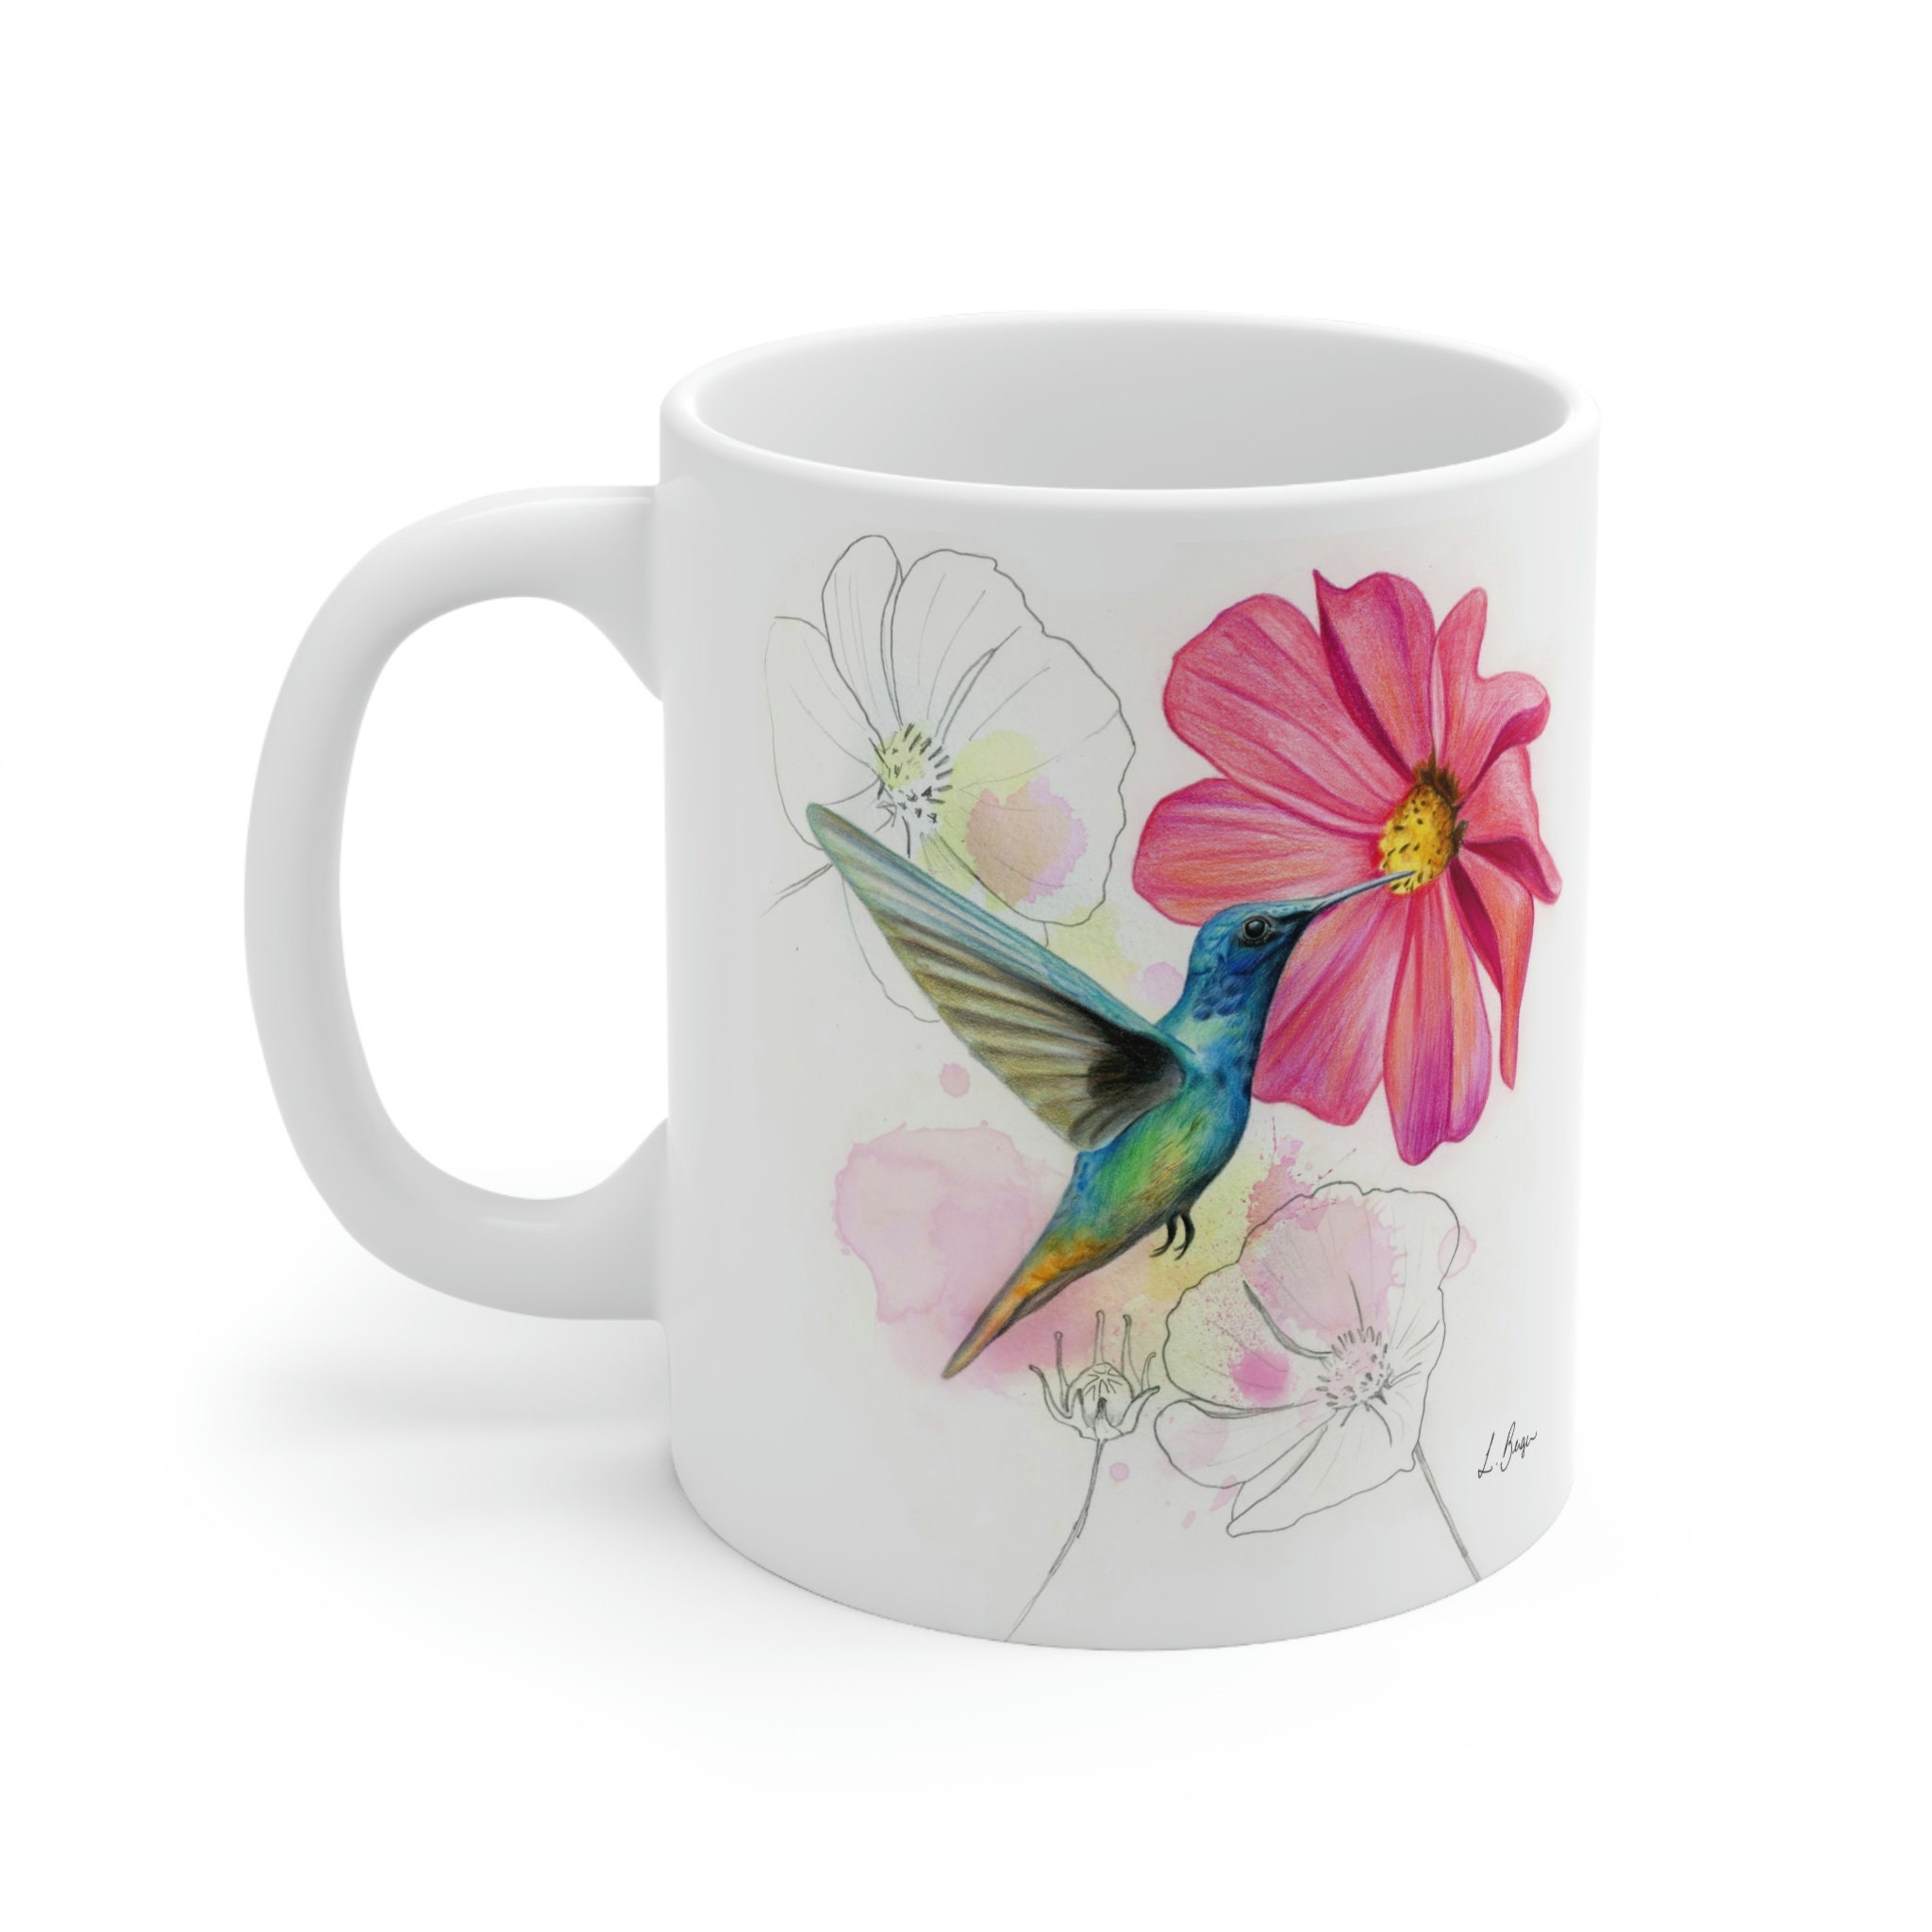 Taza Mug infusiones porcelana colibrí, Musicalia, Tu tienda de regalos en  Azuqueca